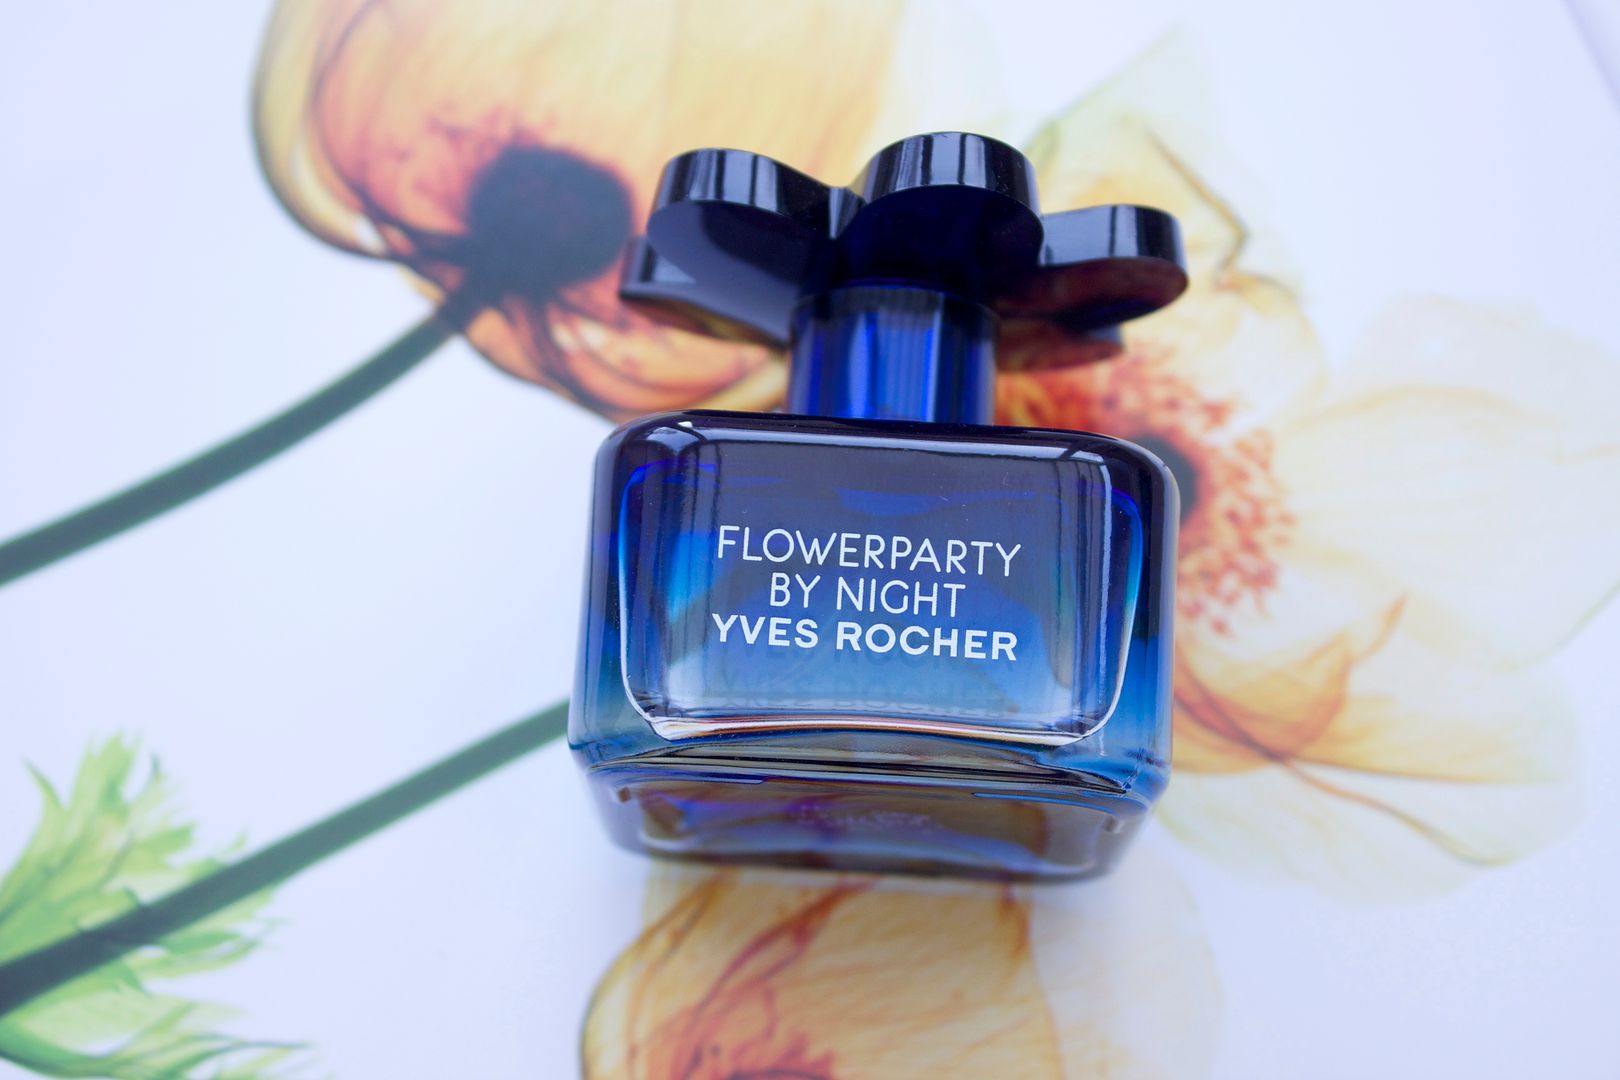 Yves Rocher Flowerparty By Night Eau de parfum